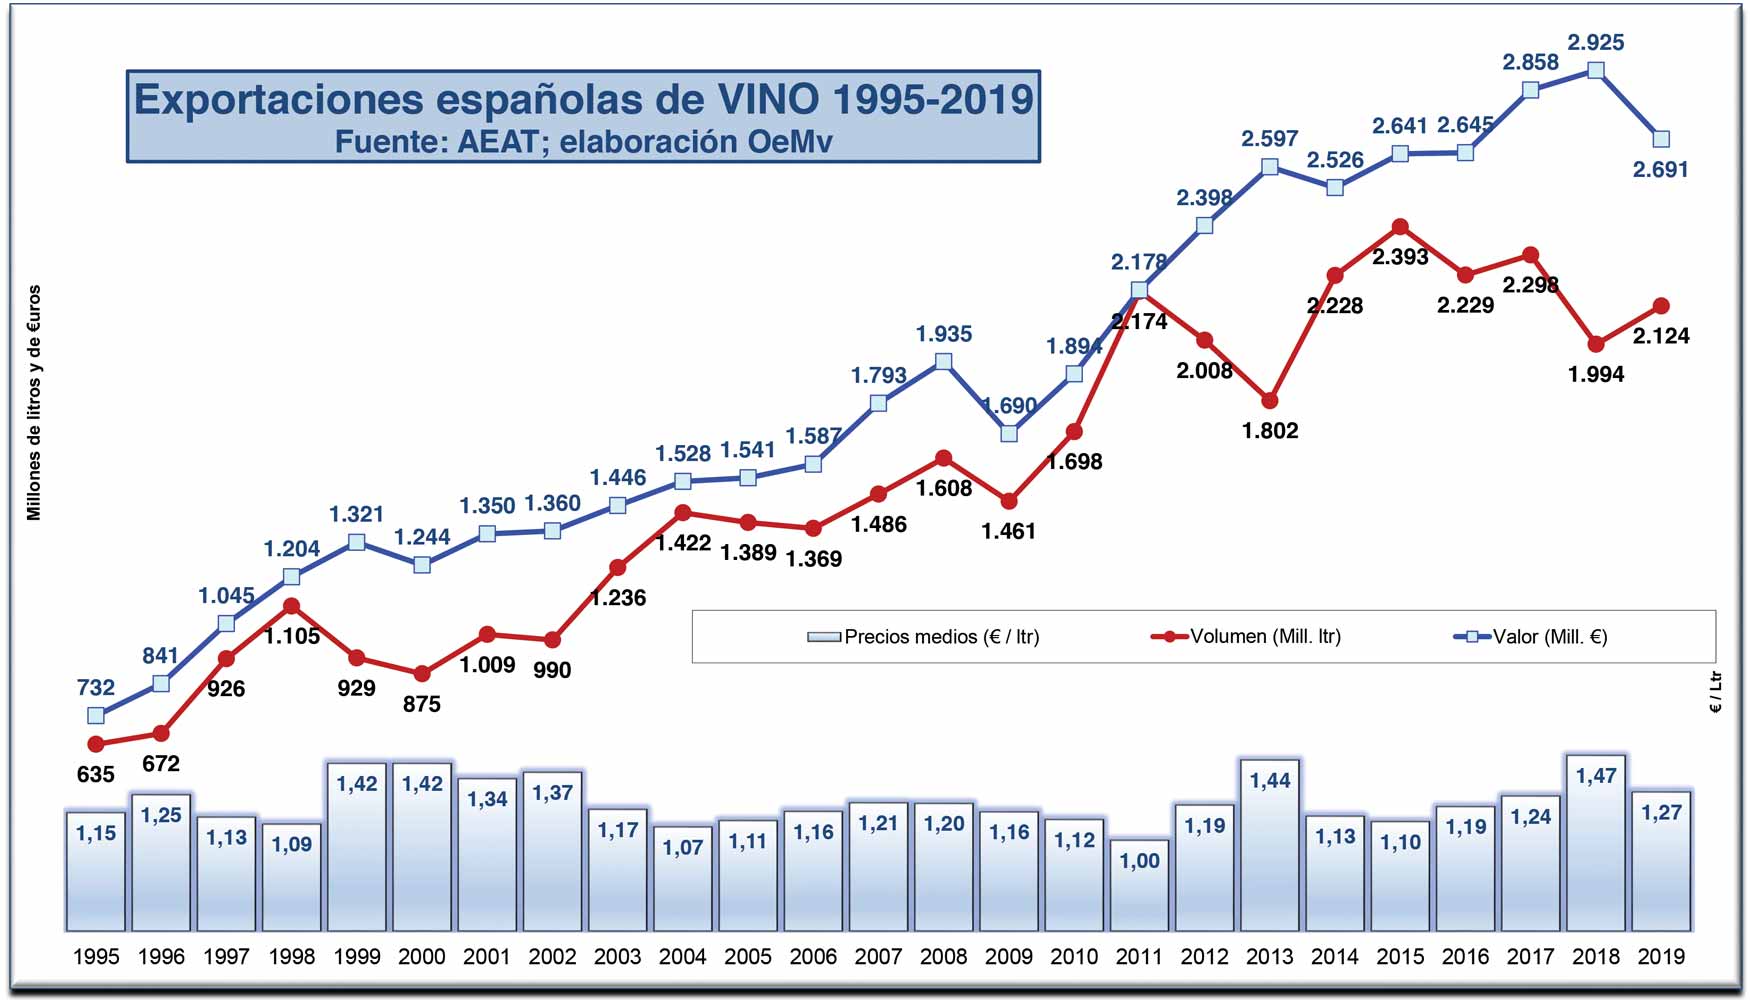 Evolucin de precio, volumen y valor medio del vino espaol exportado (Periodo 1995-2019)